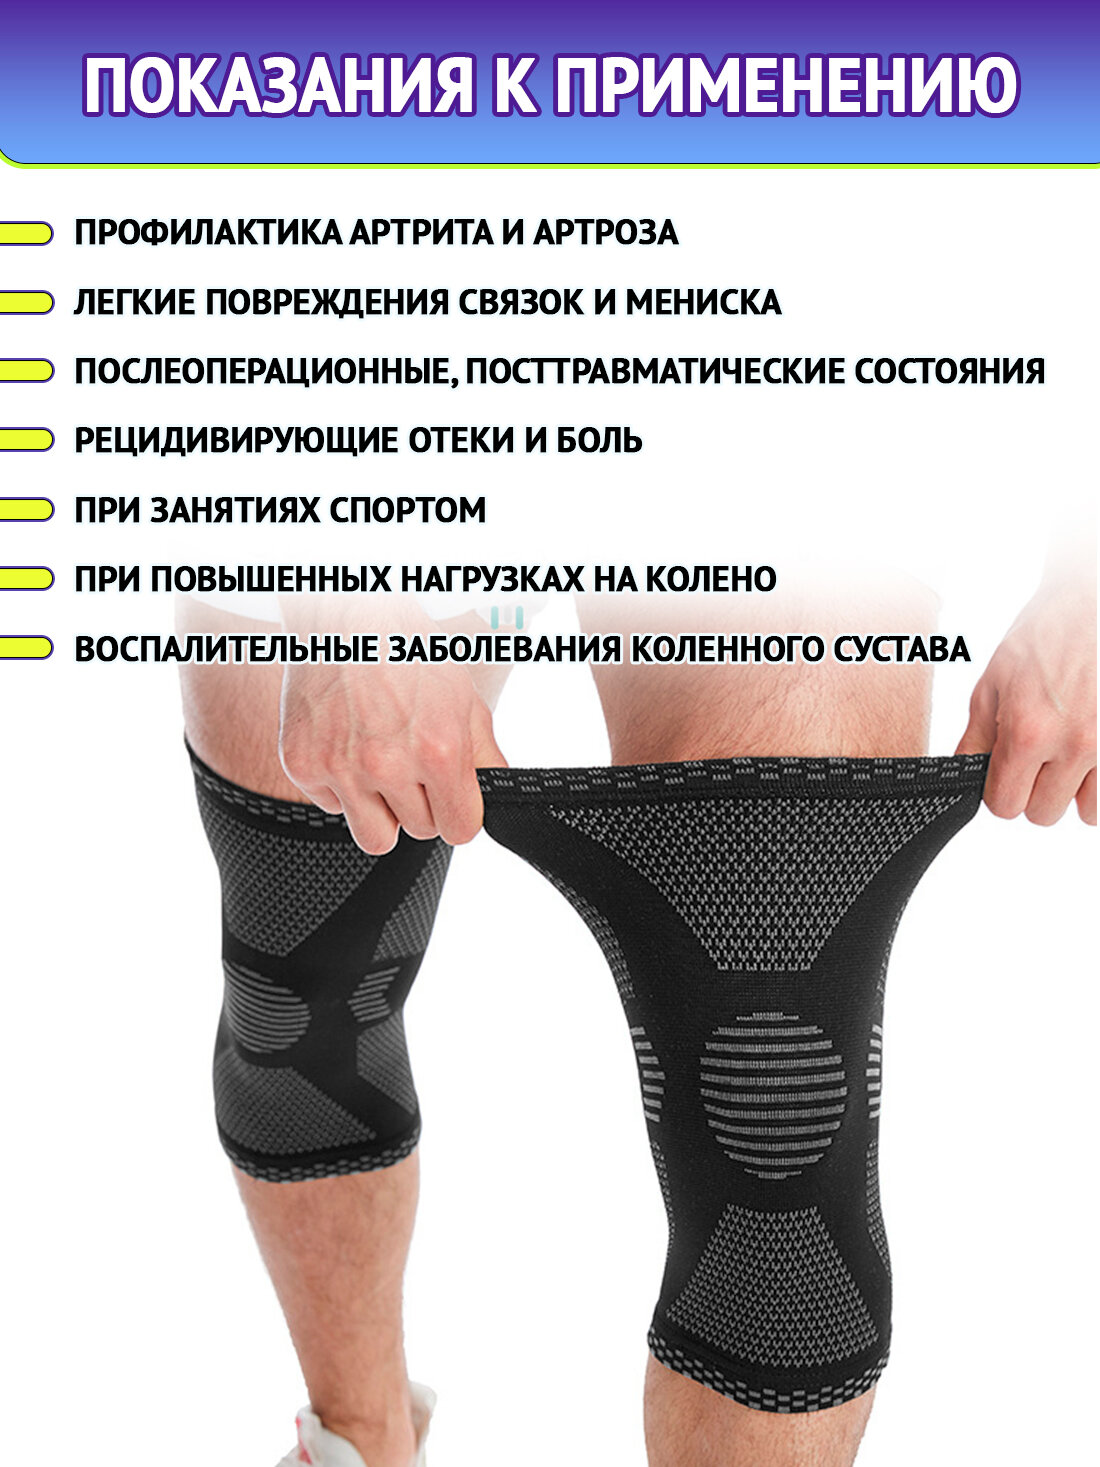 Наколенник для защиты коленного сустава XXL (55-60), бандаж коленный, черный ORTONYX ортопедический компрессионный спортивный